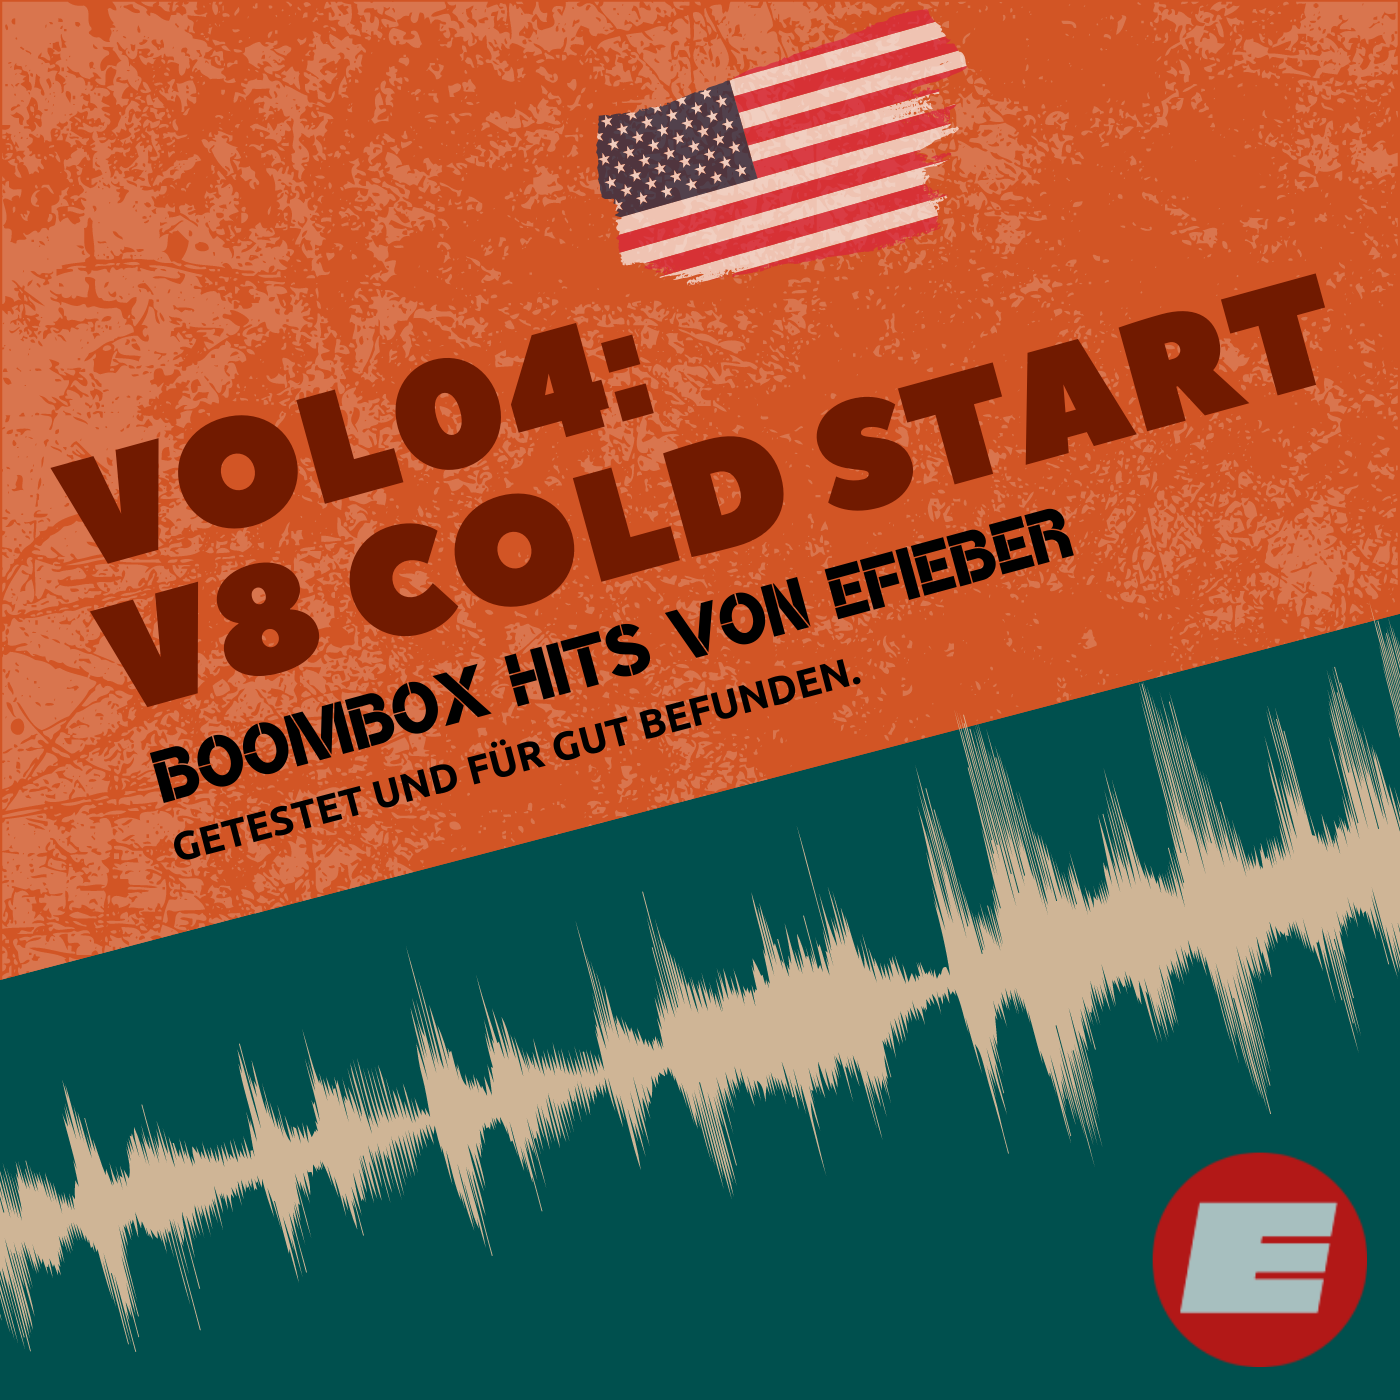 BOOMBOX Sounds Vol04: V8 Cold Start (Download - siehe Produktbeschreibung)